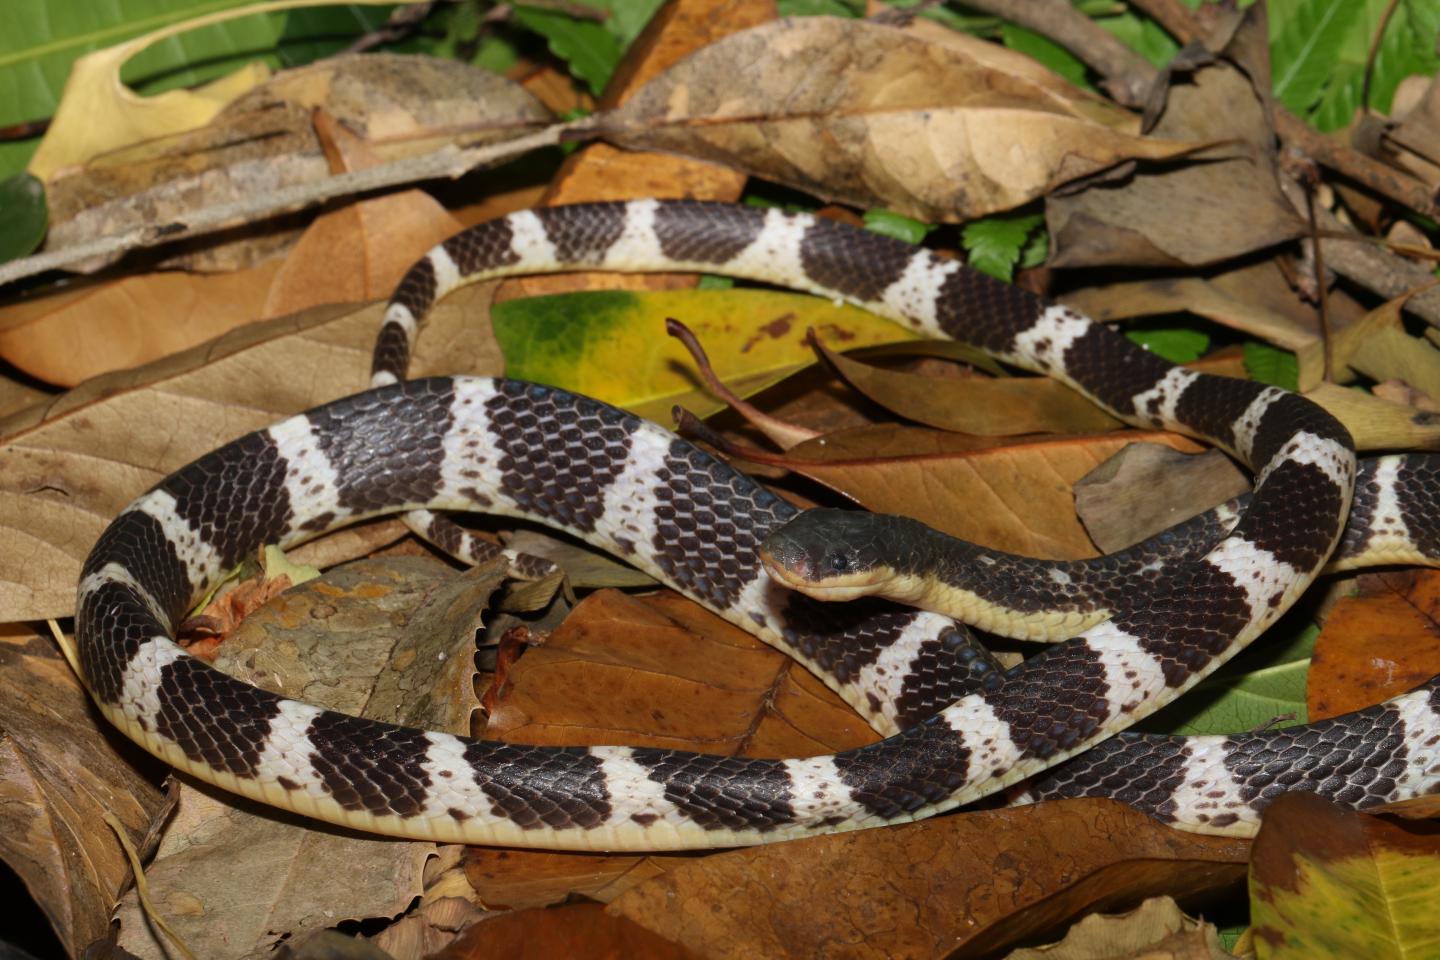 Hallan en Asia nueva especie de serpiente que es altamente venenosa